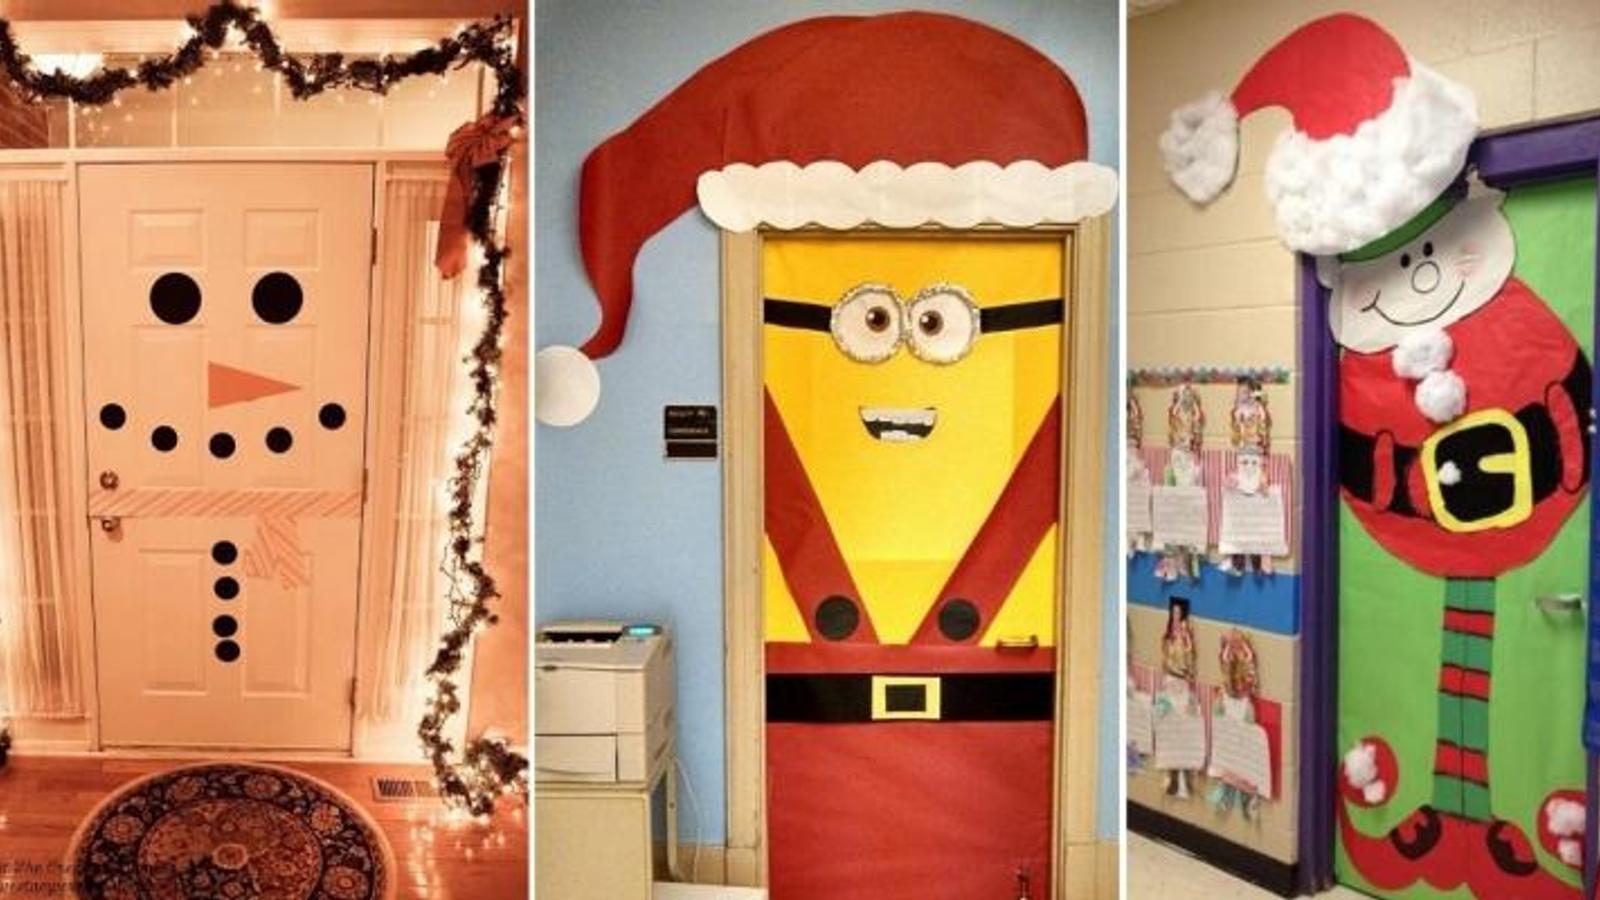 20 Magnifiques idées pour décorer une porte pour Noël! Une idée à bricoler avec les enfants! 